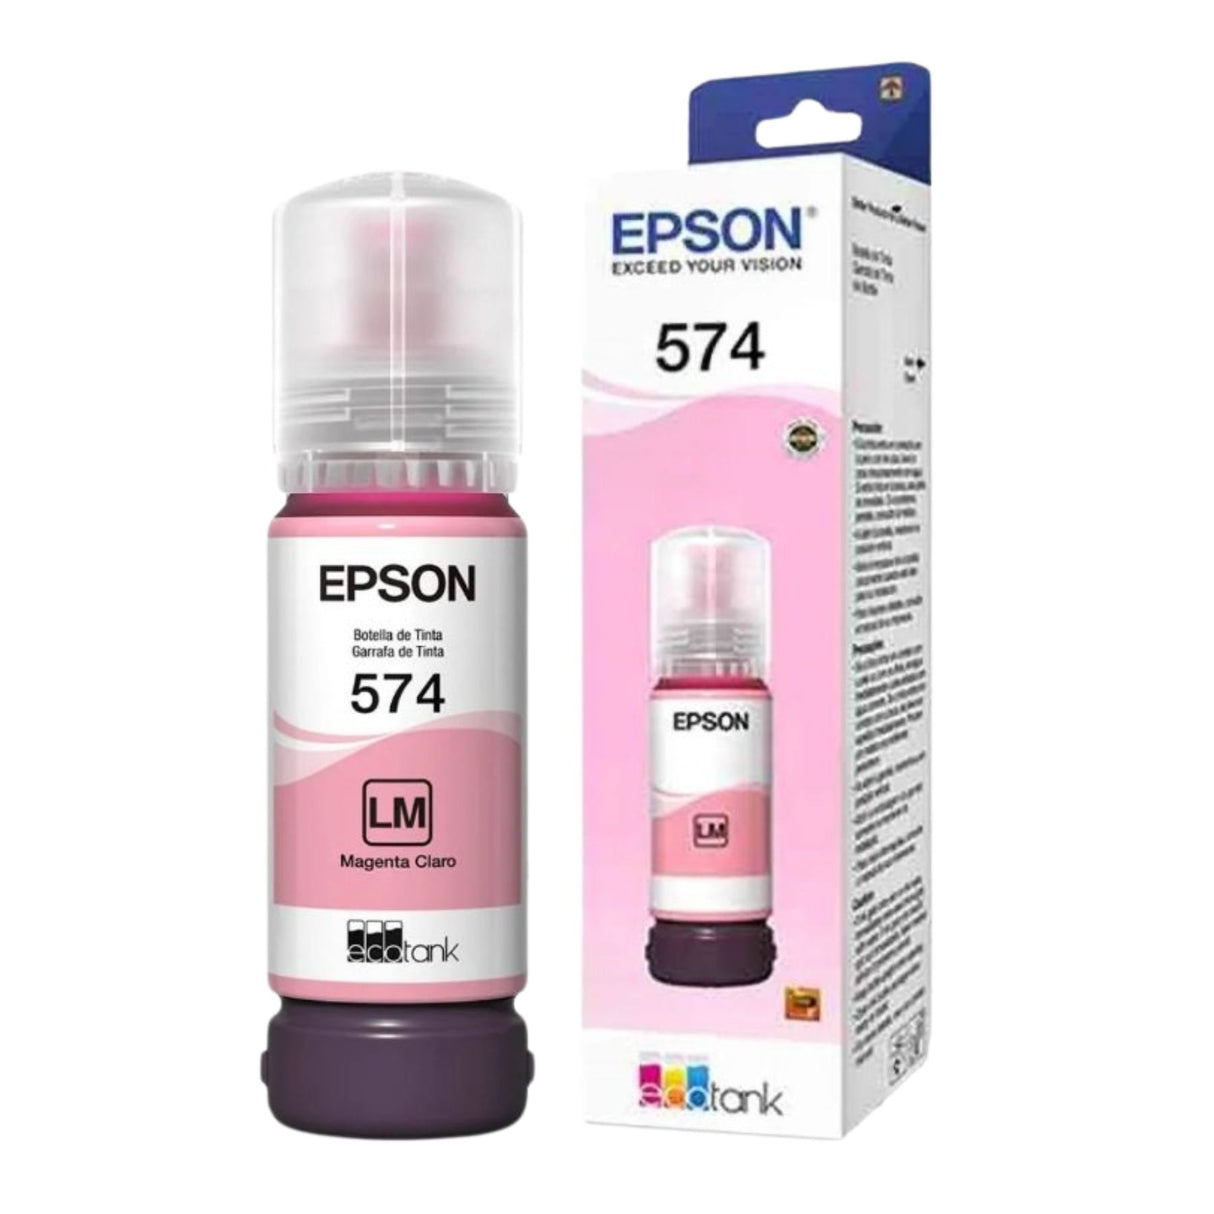 Tinta Epson T574620 - Magenta Claro | Epson 574 | L8050/L18050